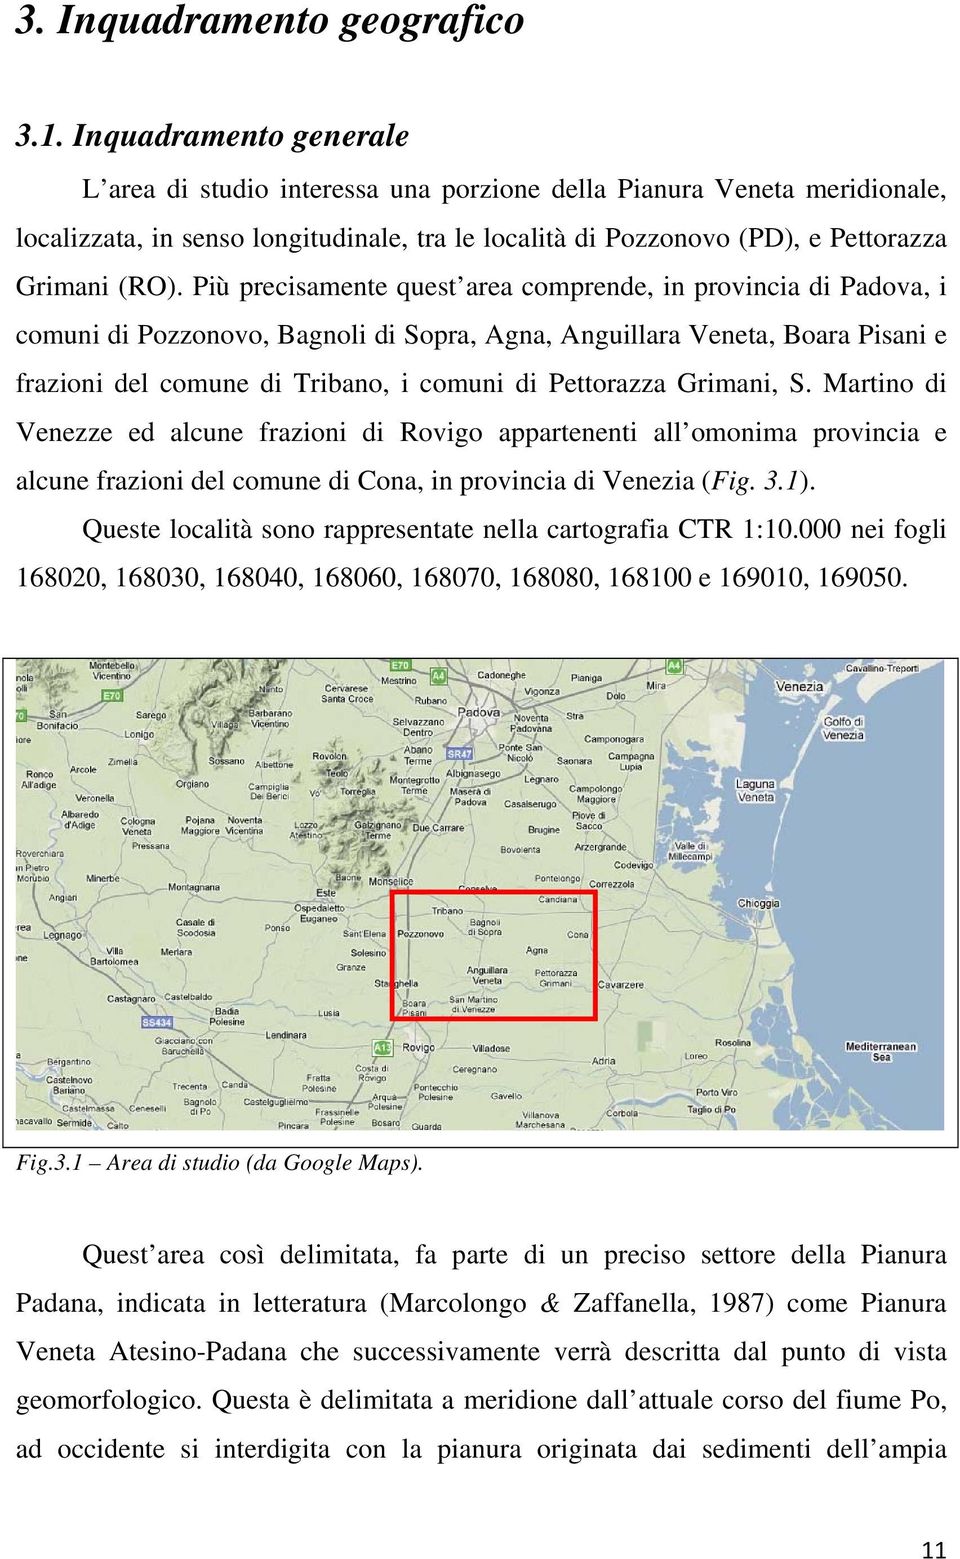 Più precisamente quest area comprende, in provincia di Padova, i comuni di Pozzonovo, Bagnoli di Sopra, Agna, Anguillara Veneta, Boara Pisani e frazioni del comune di Tribano, i comuni di Pettorazza